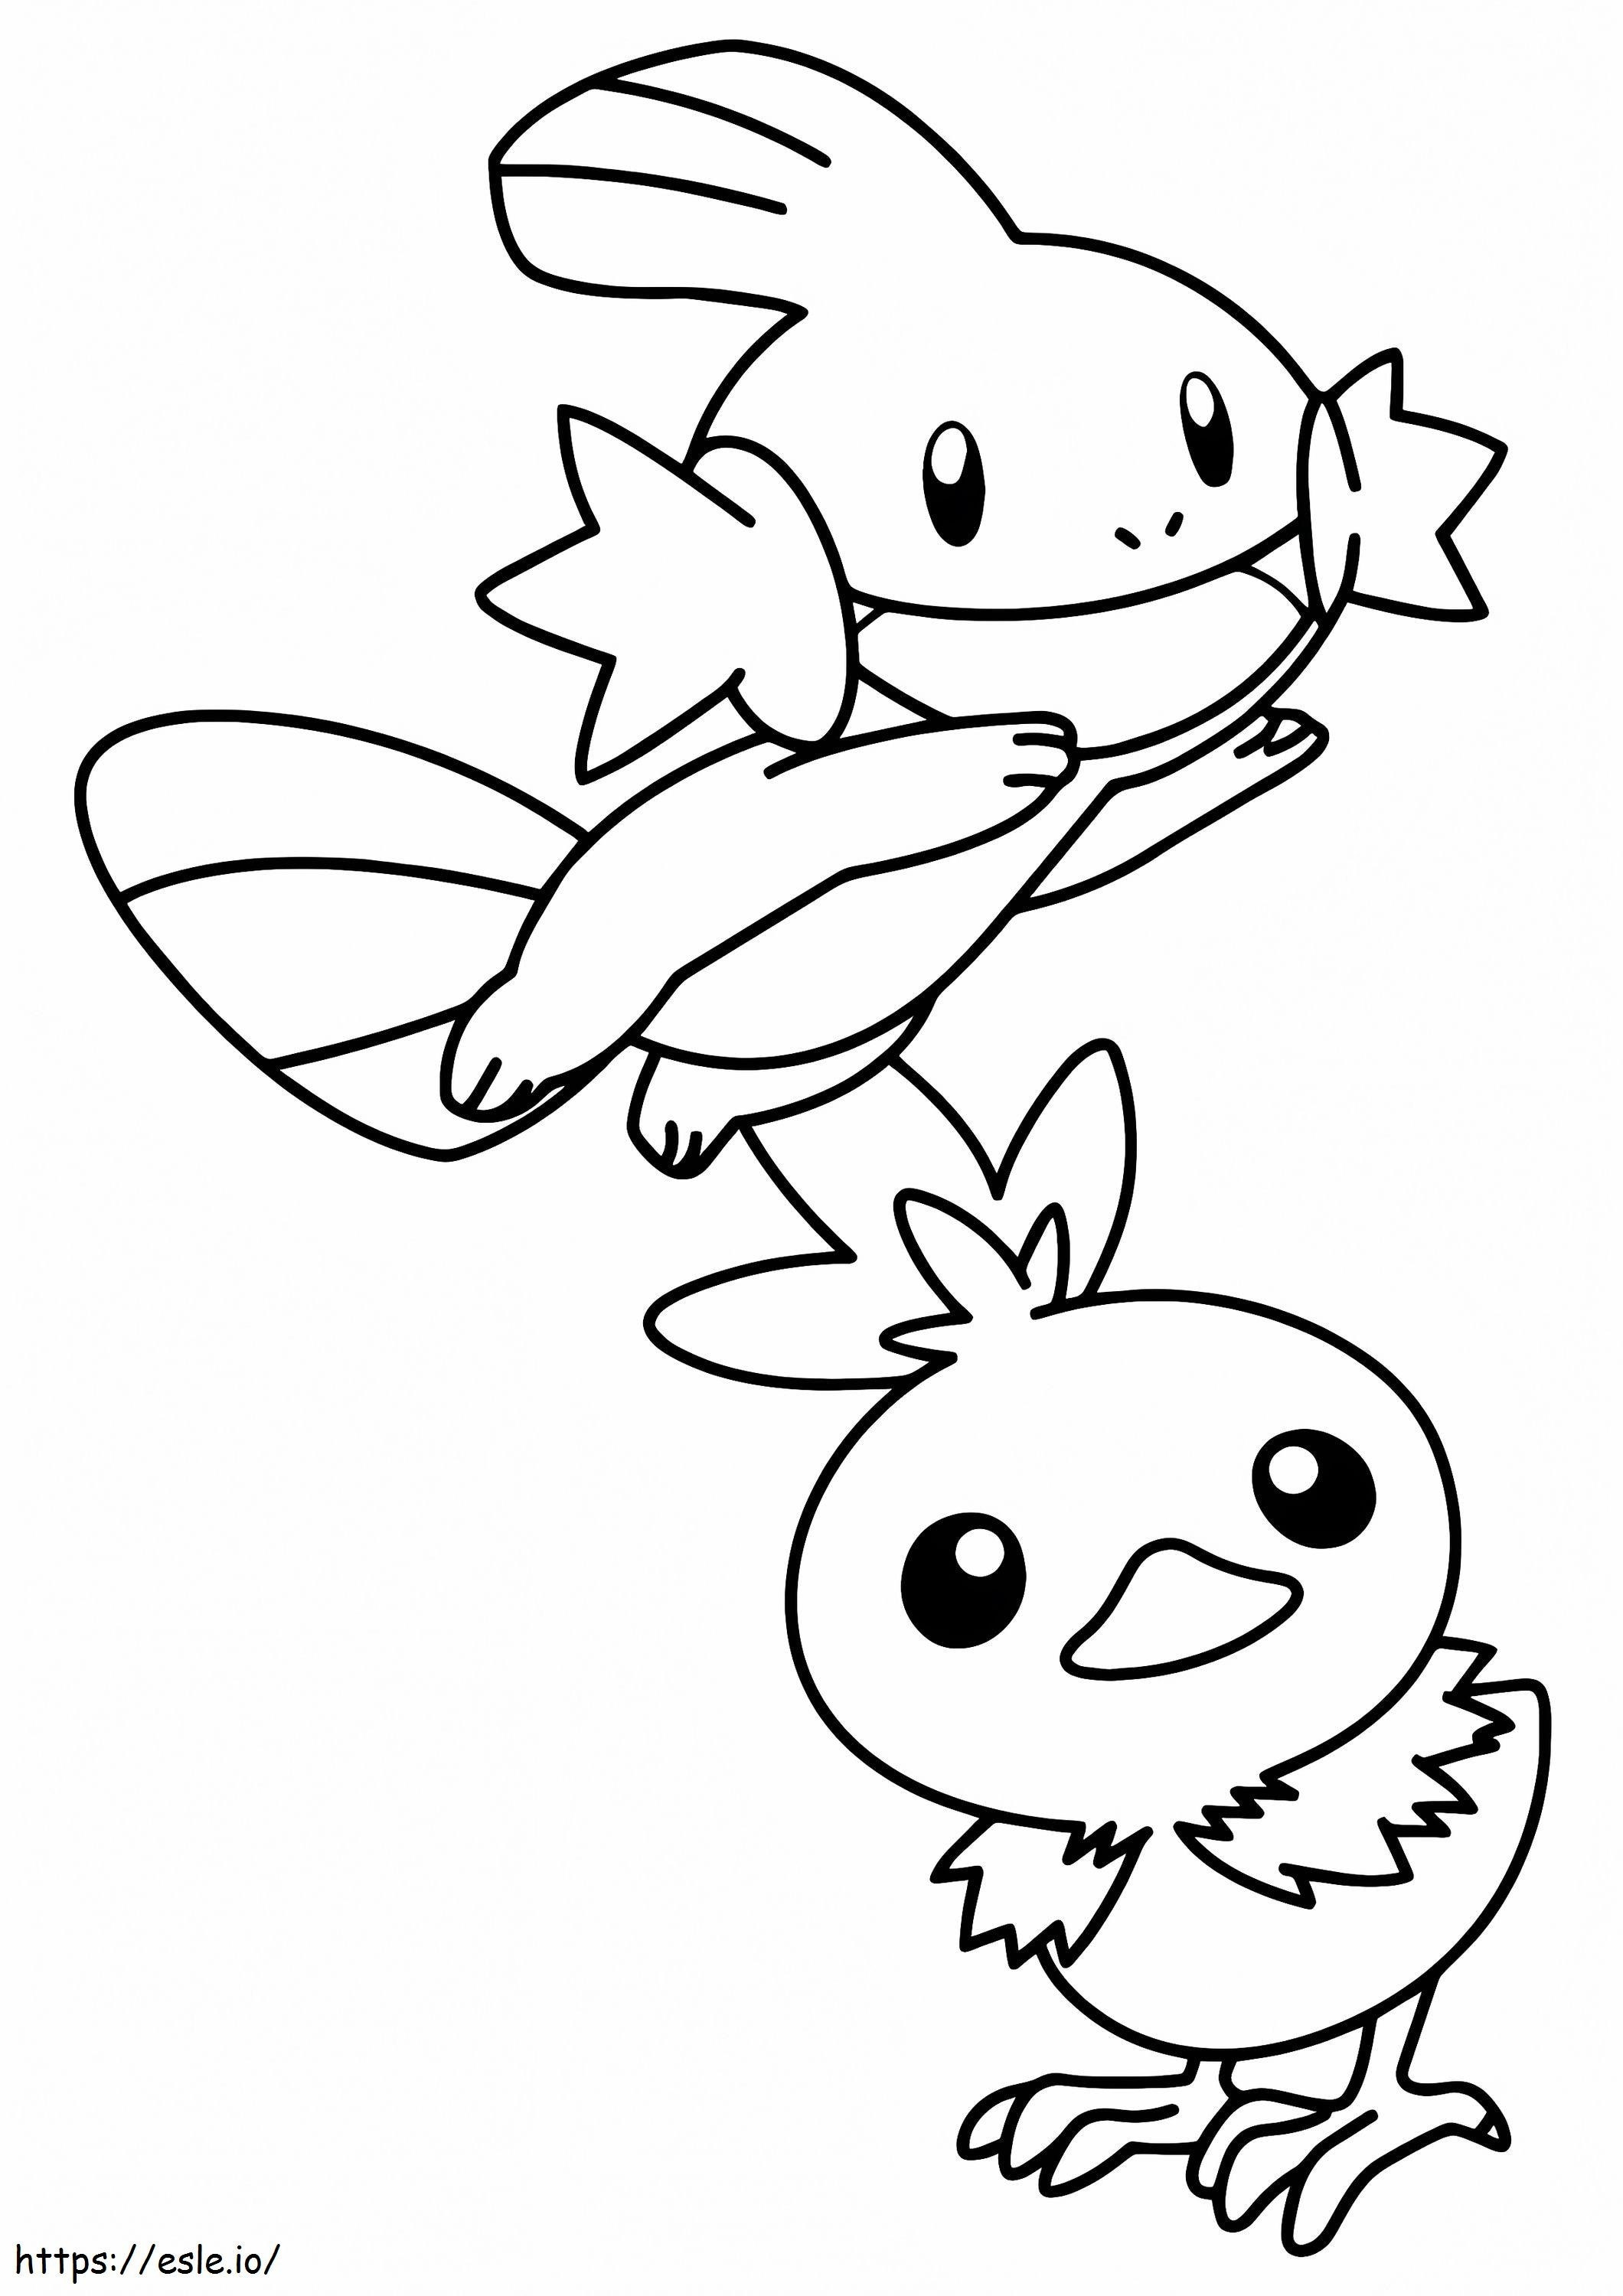 Coloriage 1528273519_Coloriage Pokémon A4 à imprimer dessin